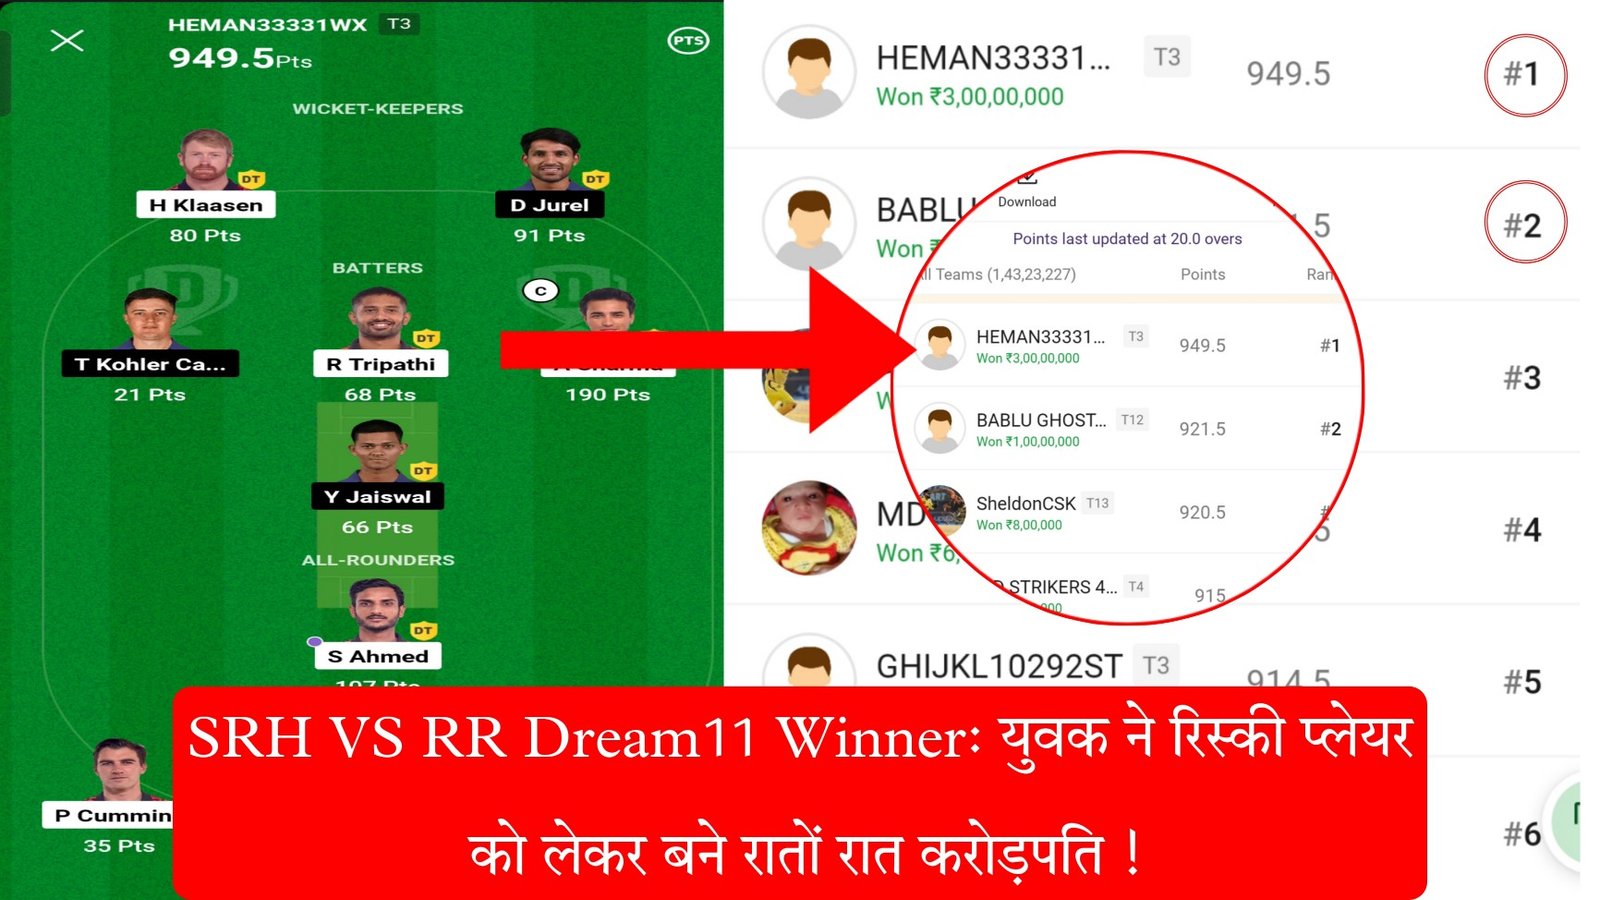 SRH VS RR Dream11 Winner